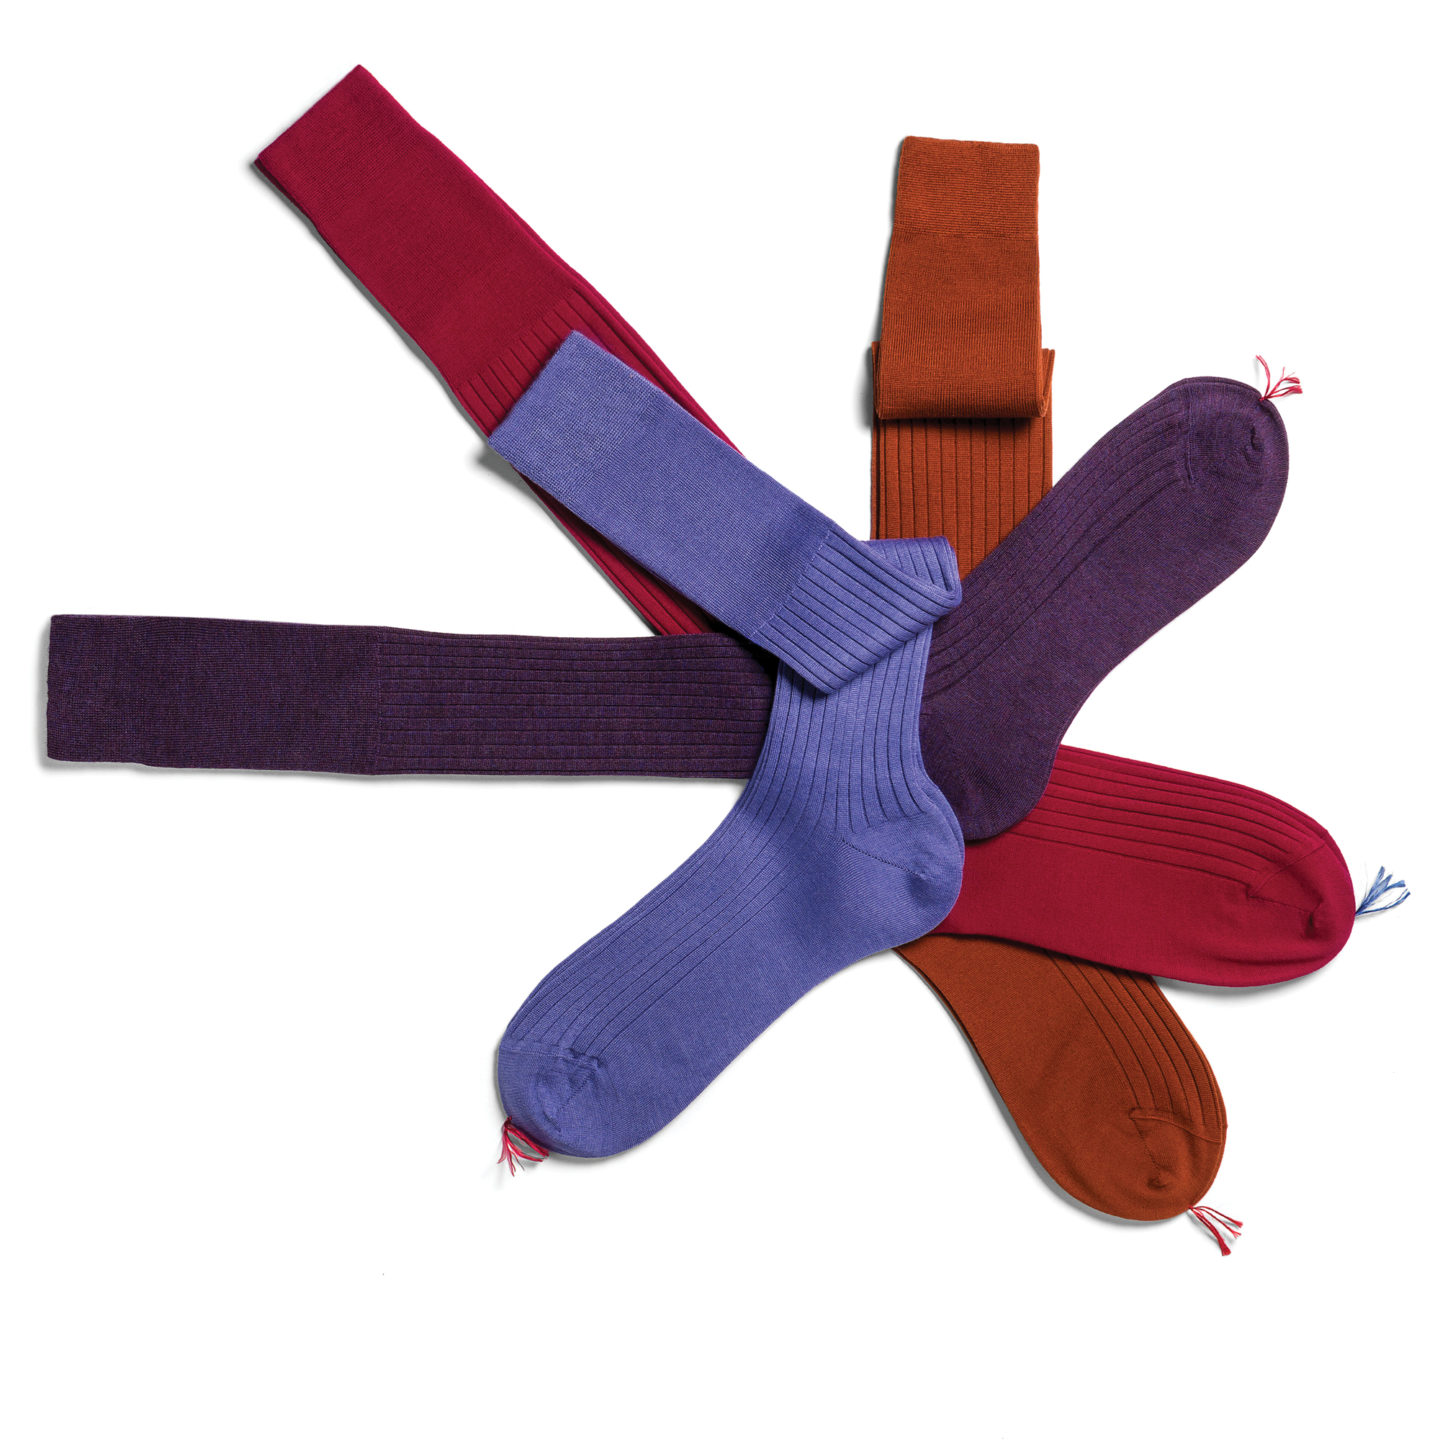 Bresciani calzificio socks styling cotton purple red